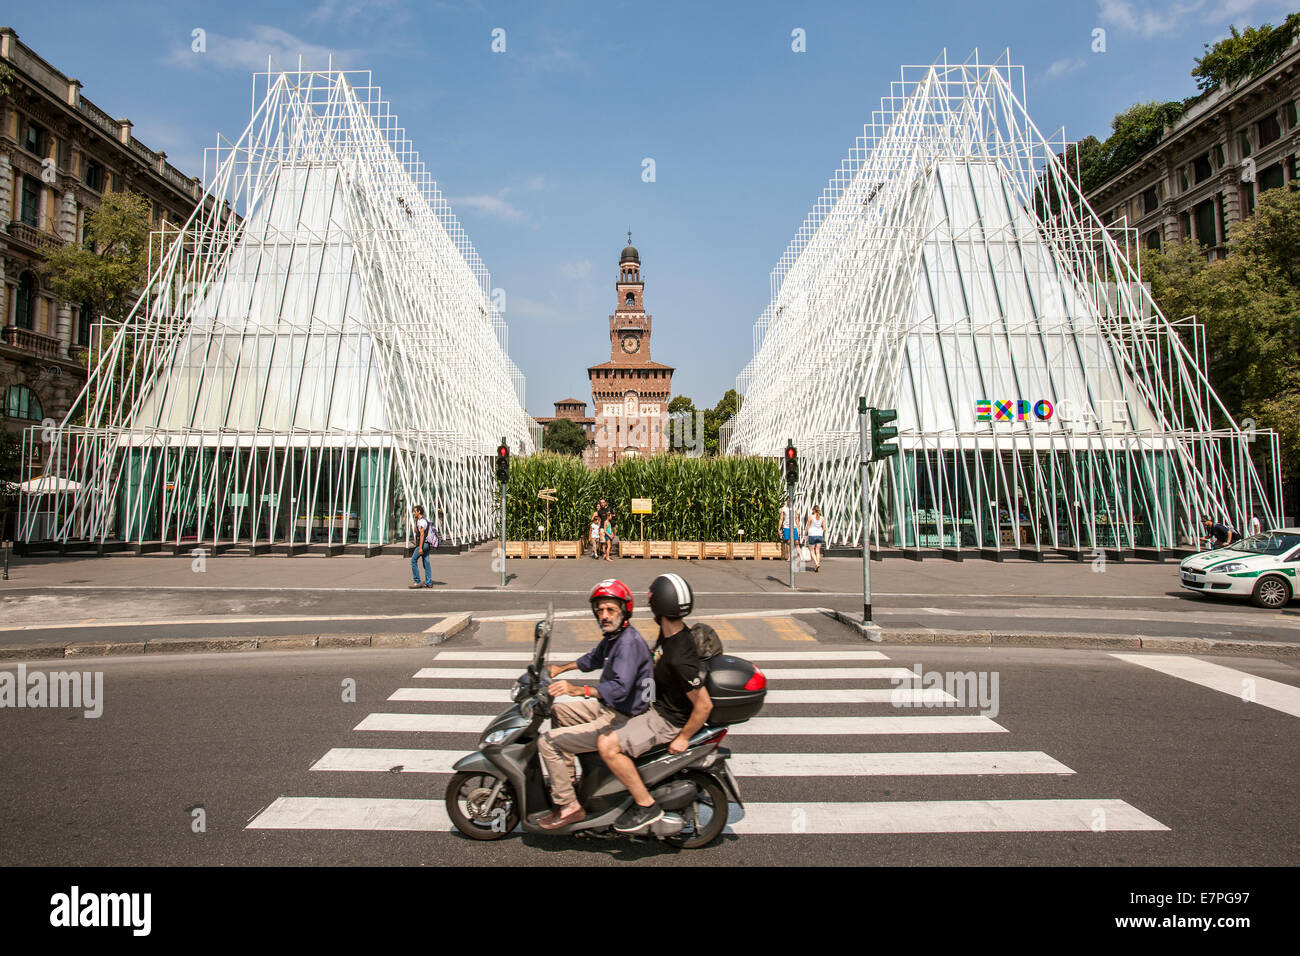 Milano Expo 2015, EXPOGATE, equo universale, esposizione, Castello Sforzesco, gate, infopoint, attraversamento pedonale, motociclisti Foto Stock